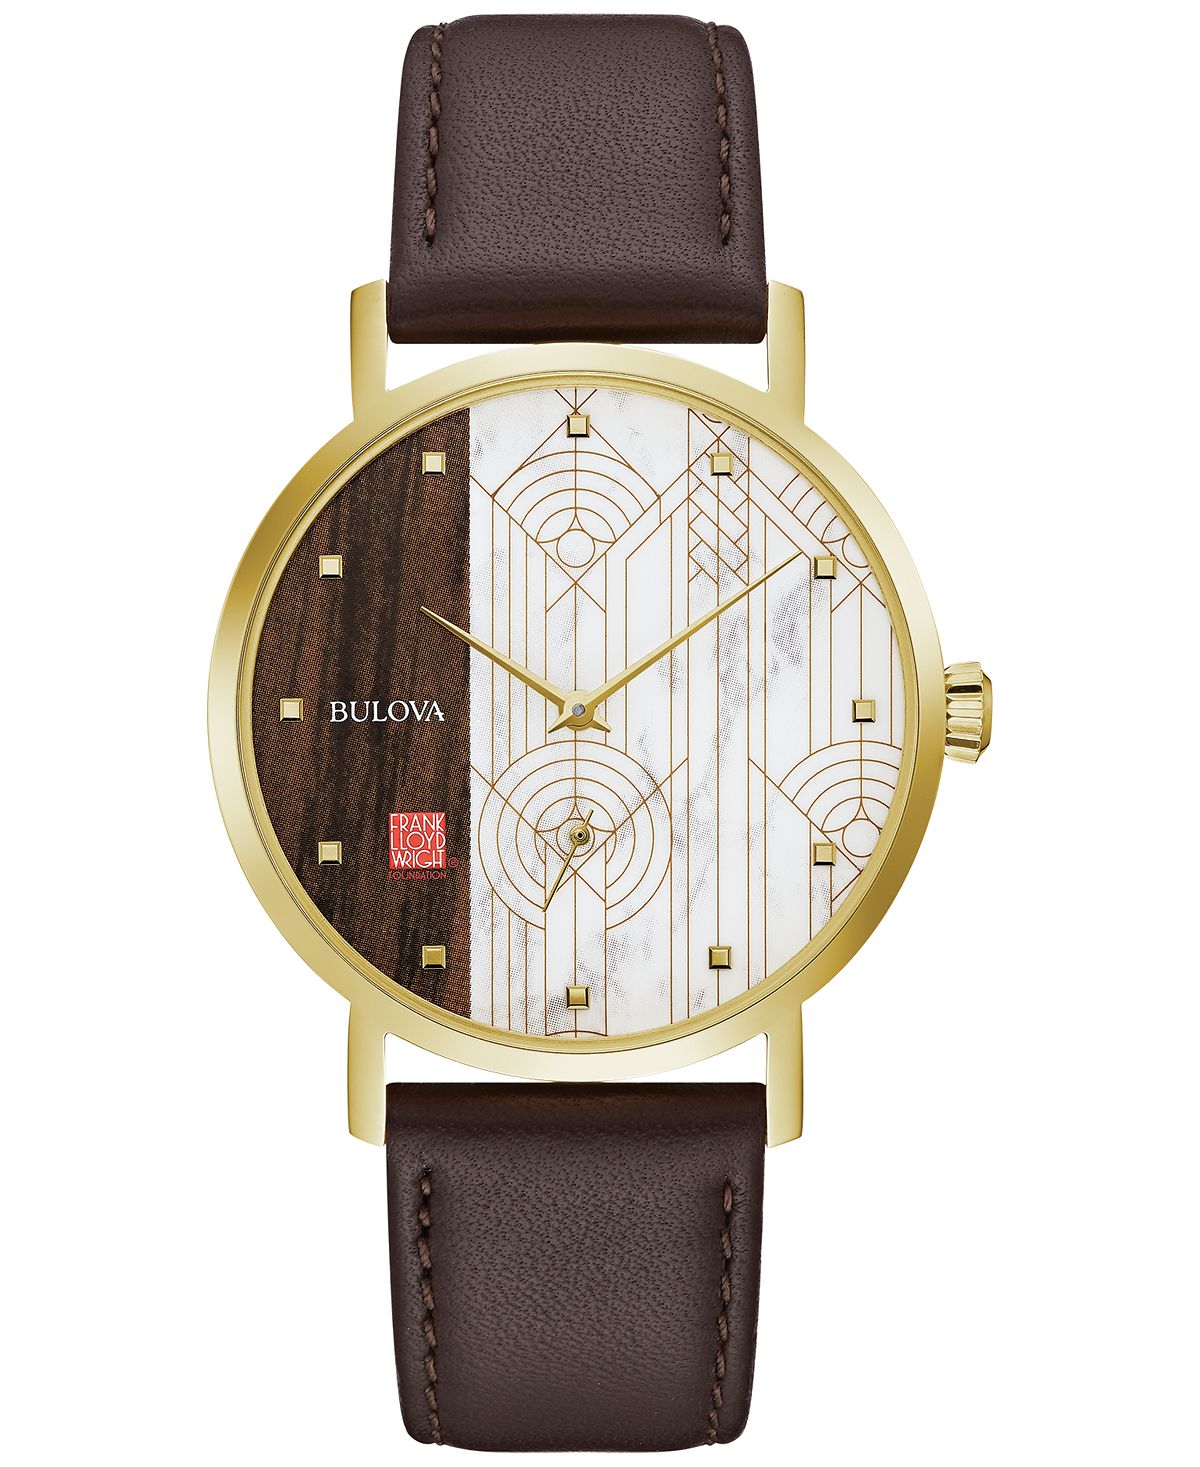 Мужские часы Frank Lloyd Wright \April Showers\ коричневый кожаный ремешок 39 мм Bulova